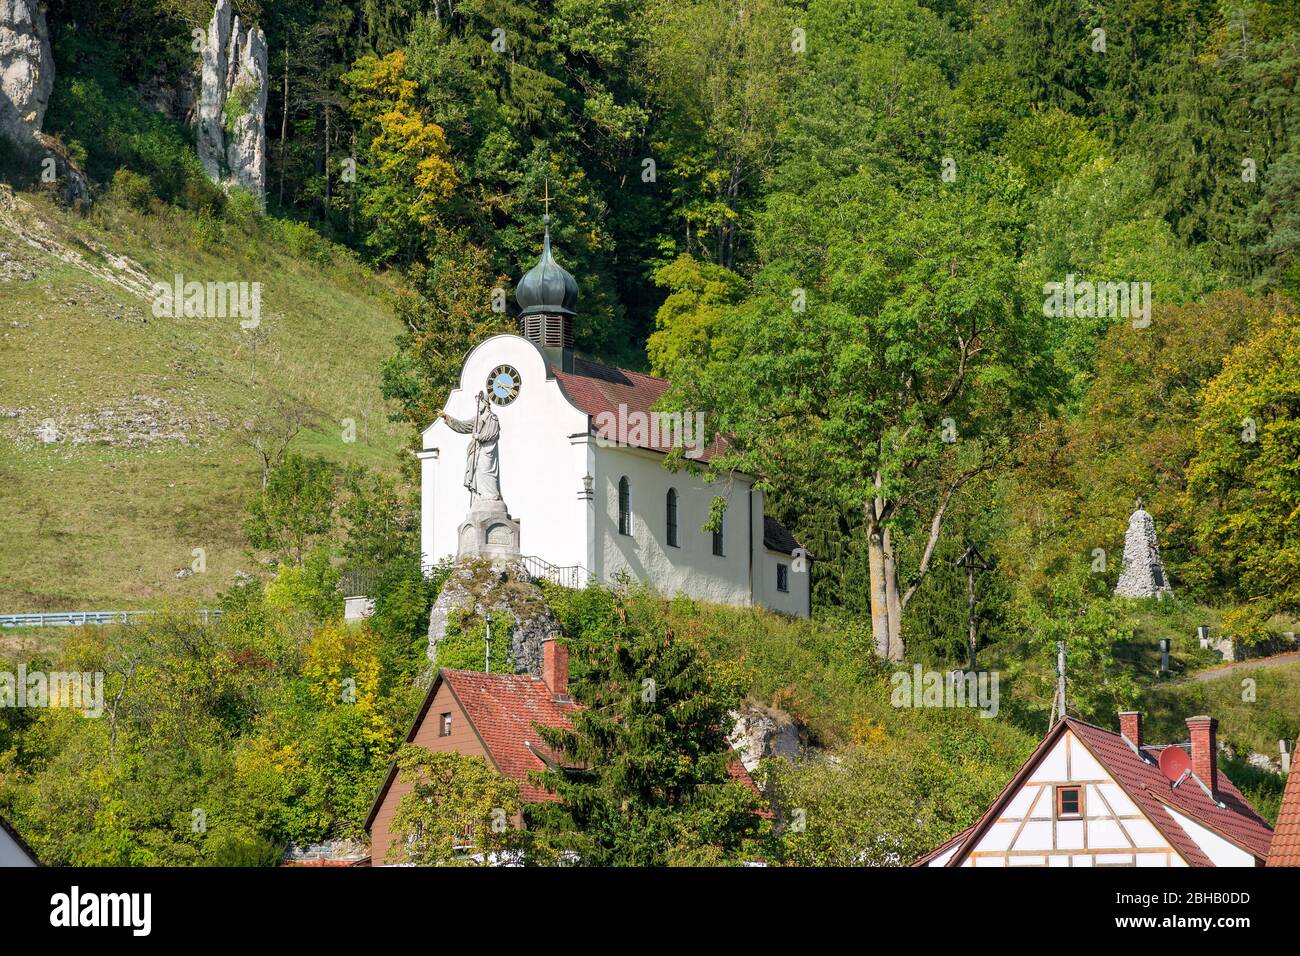 Alemania, Baden-Württemberg, Schelklingen - cabañas, vista desde el fondo del valle a la 1717/19 construida 'Capilla a la dolorosa Madre de Dios' con la estatua del 'buen Pastor' Foto de stock